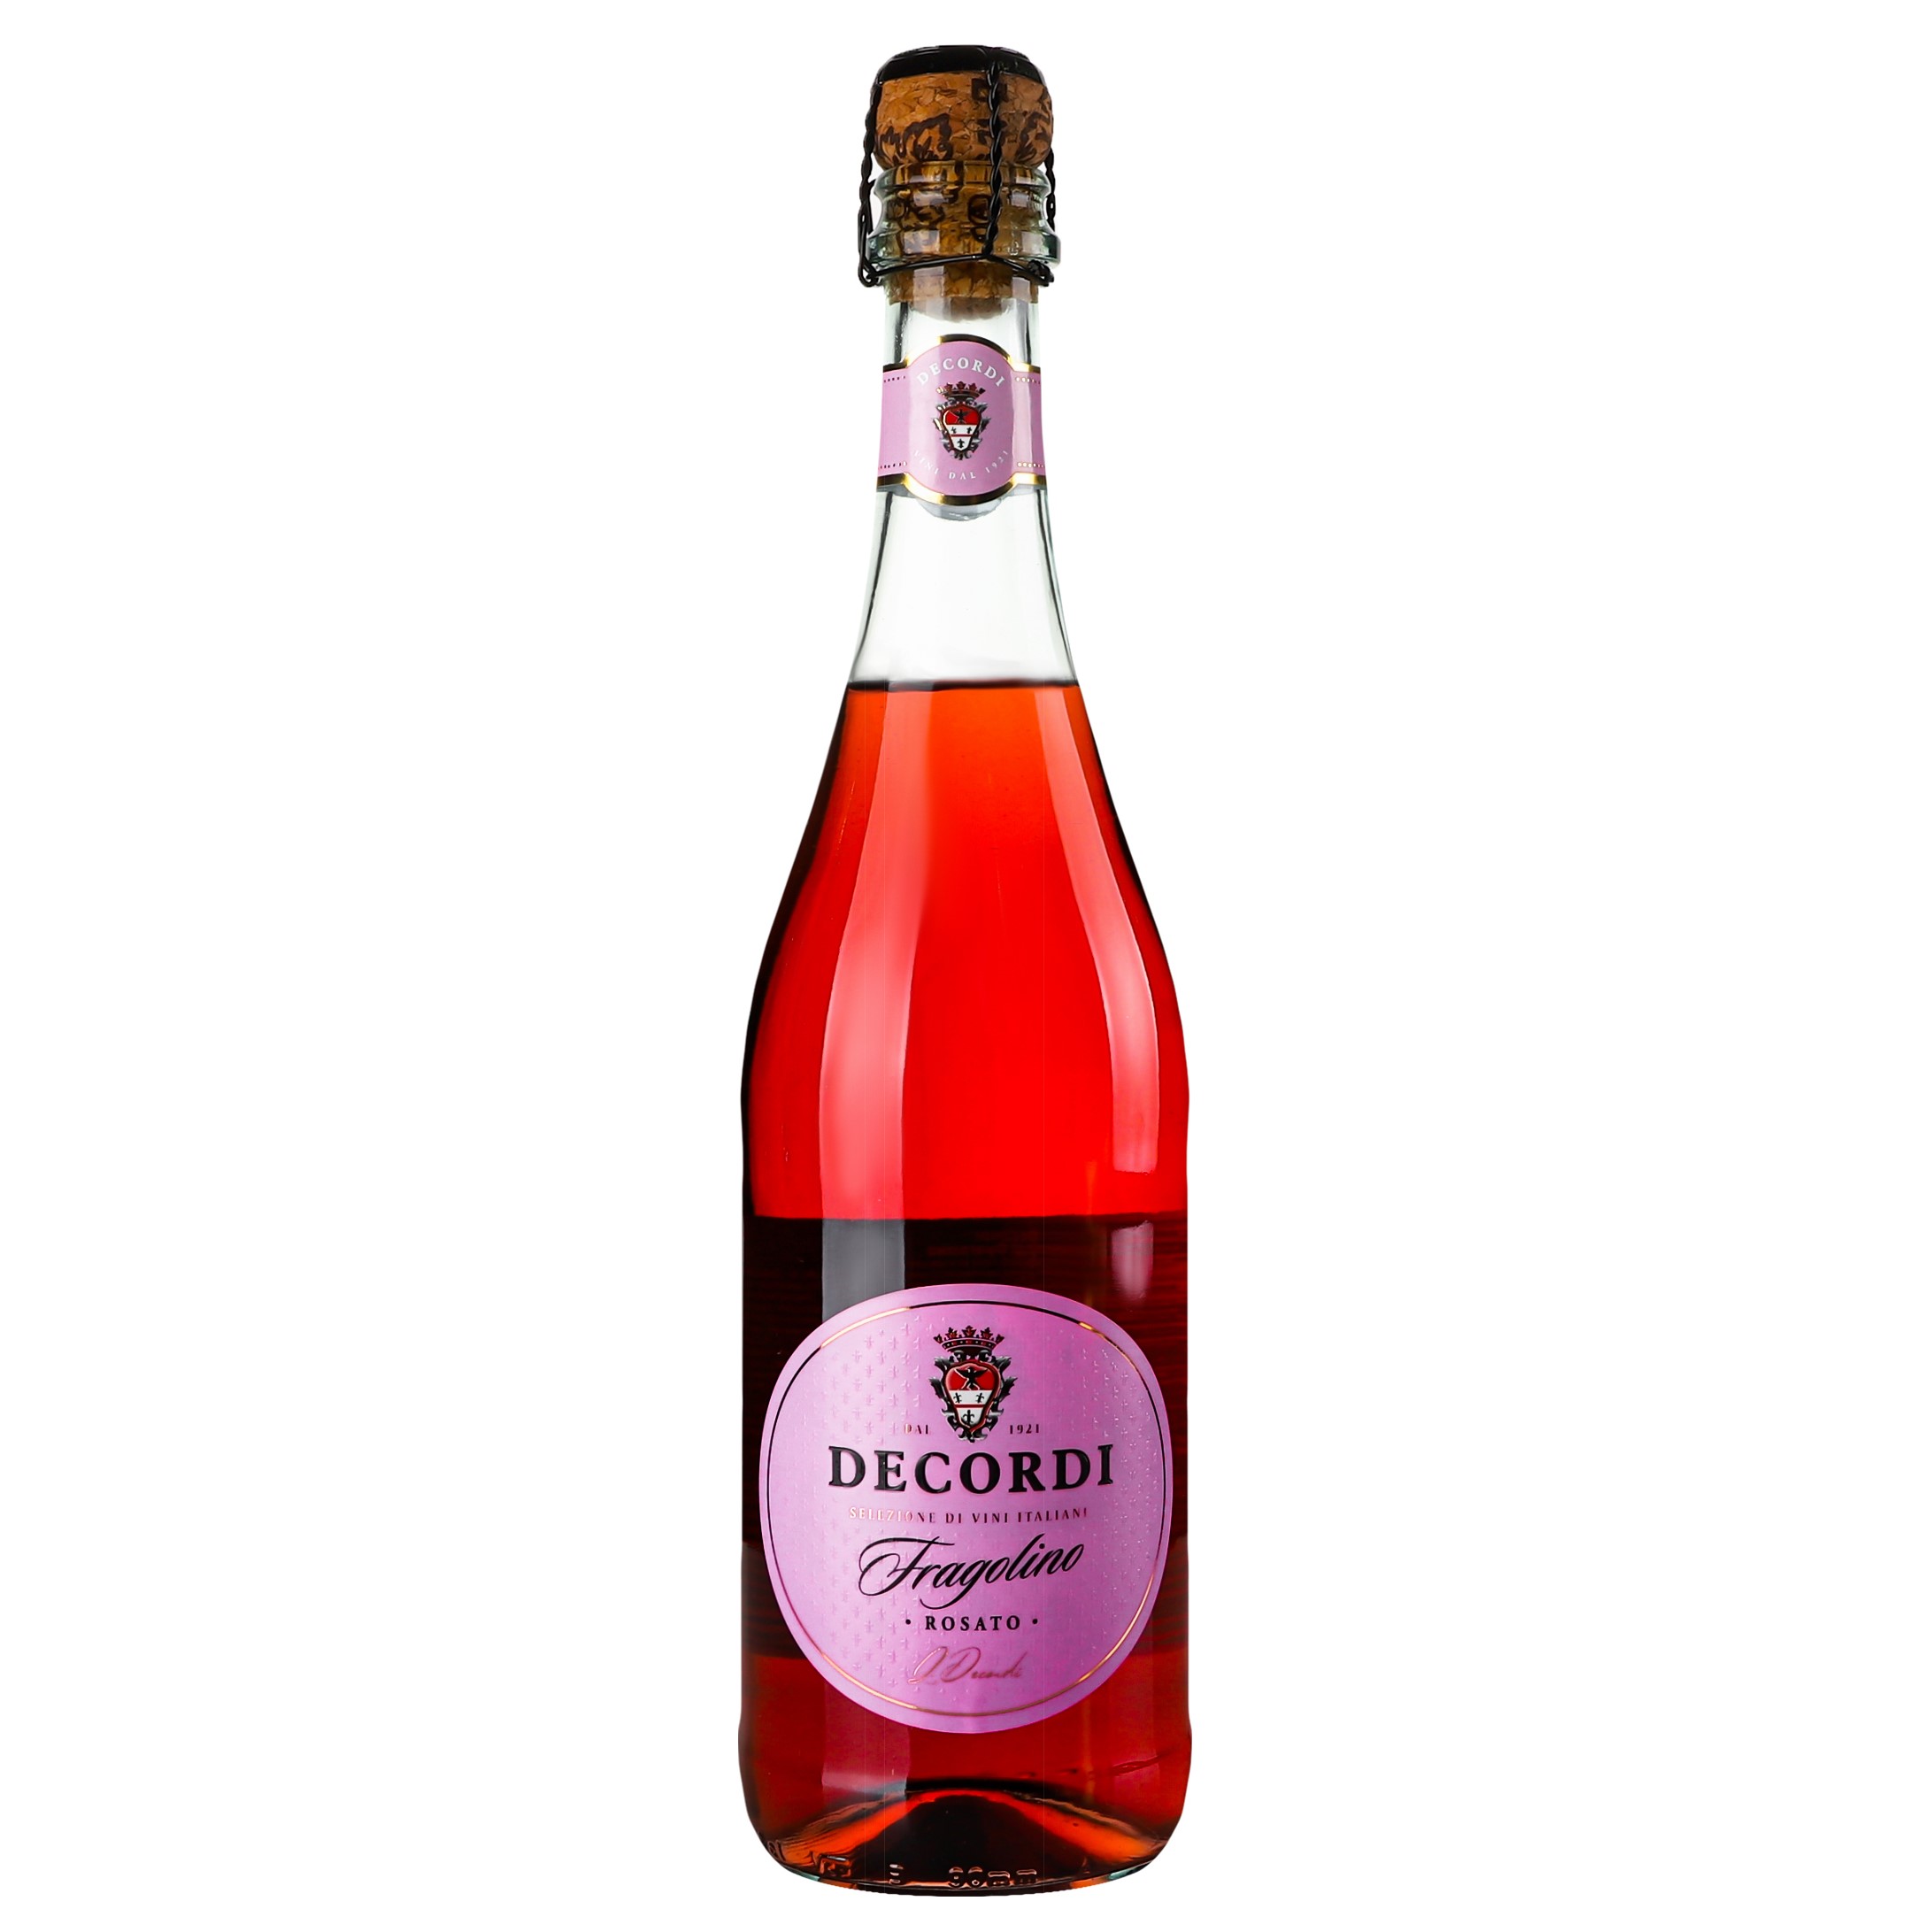 Ароматизированный напиток на основе вина Decordi Fragolino Rosato, розовый, полусладкий, 7,5%, 0,75 л - фото 1